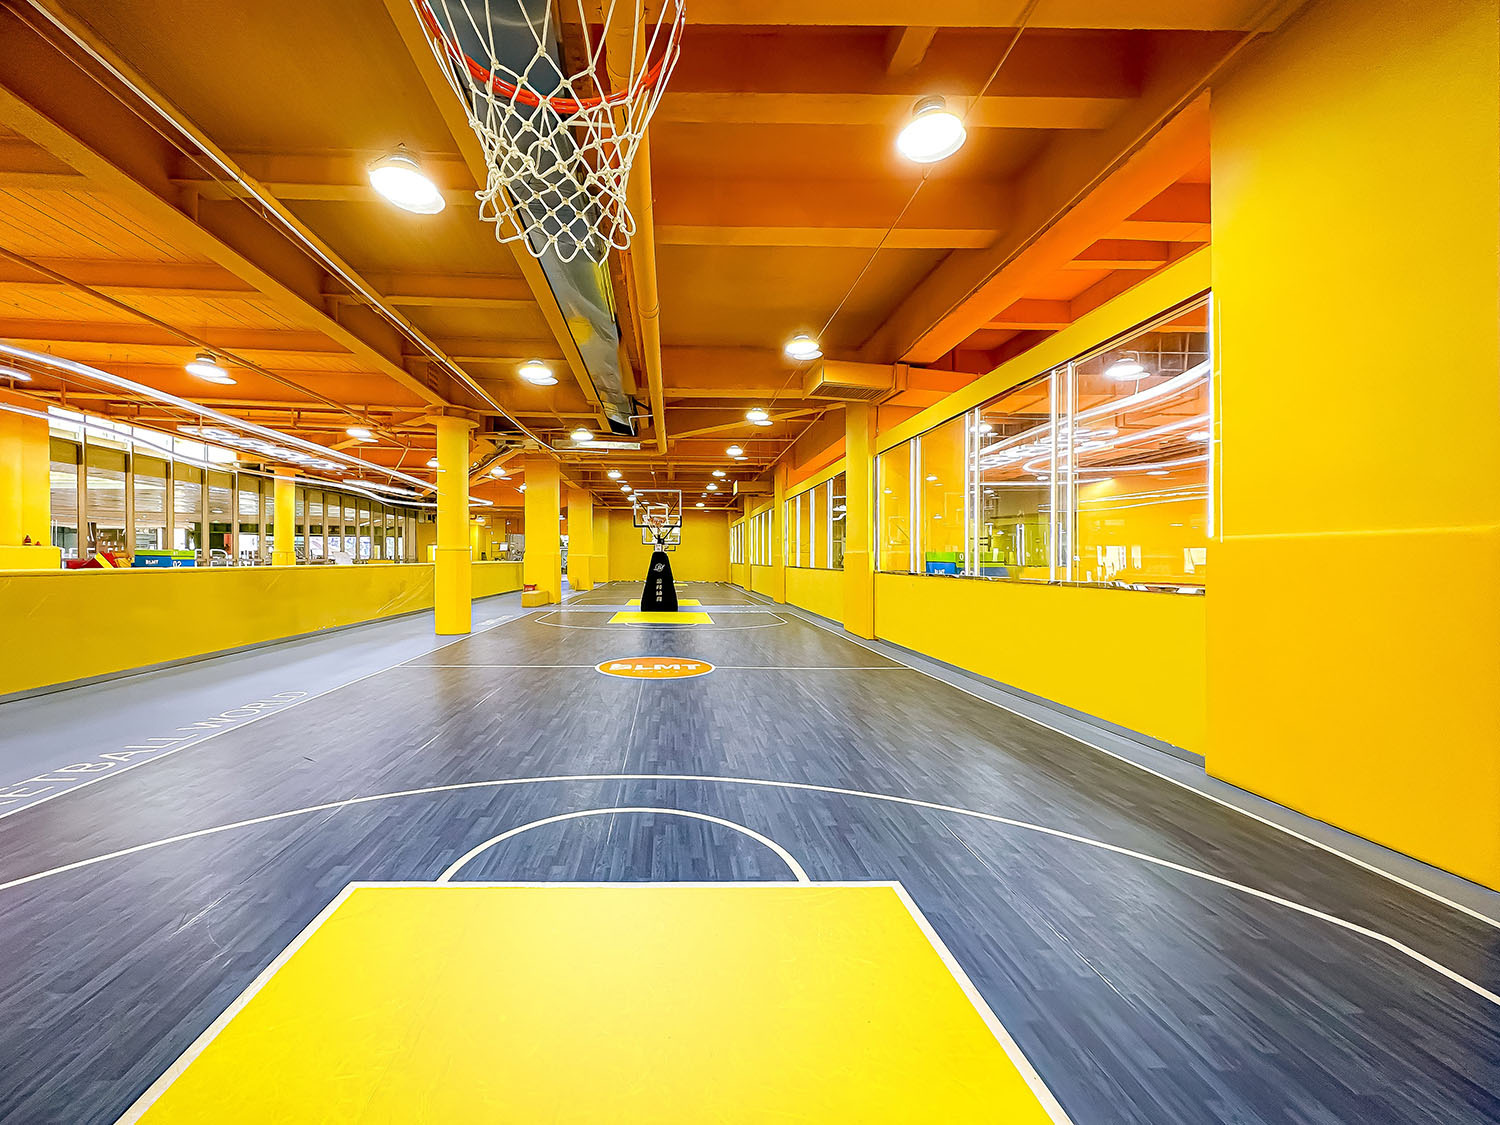 室内运动空间,篮球场设计,篮球馆设计,室内篮球场设计,运动空间设计,昆明元素体育海乐世界3.0,昆明,平介设计,杨楠